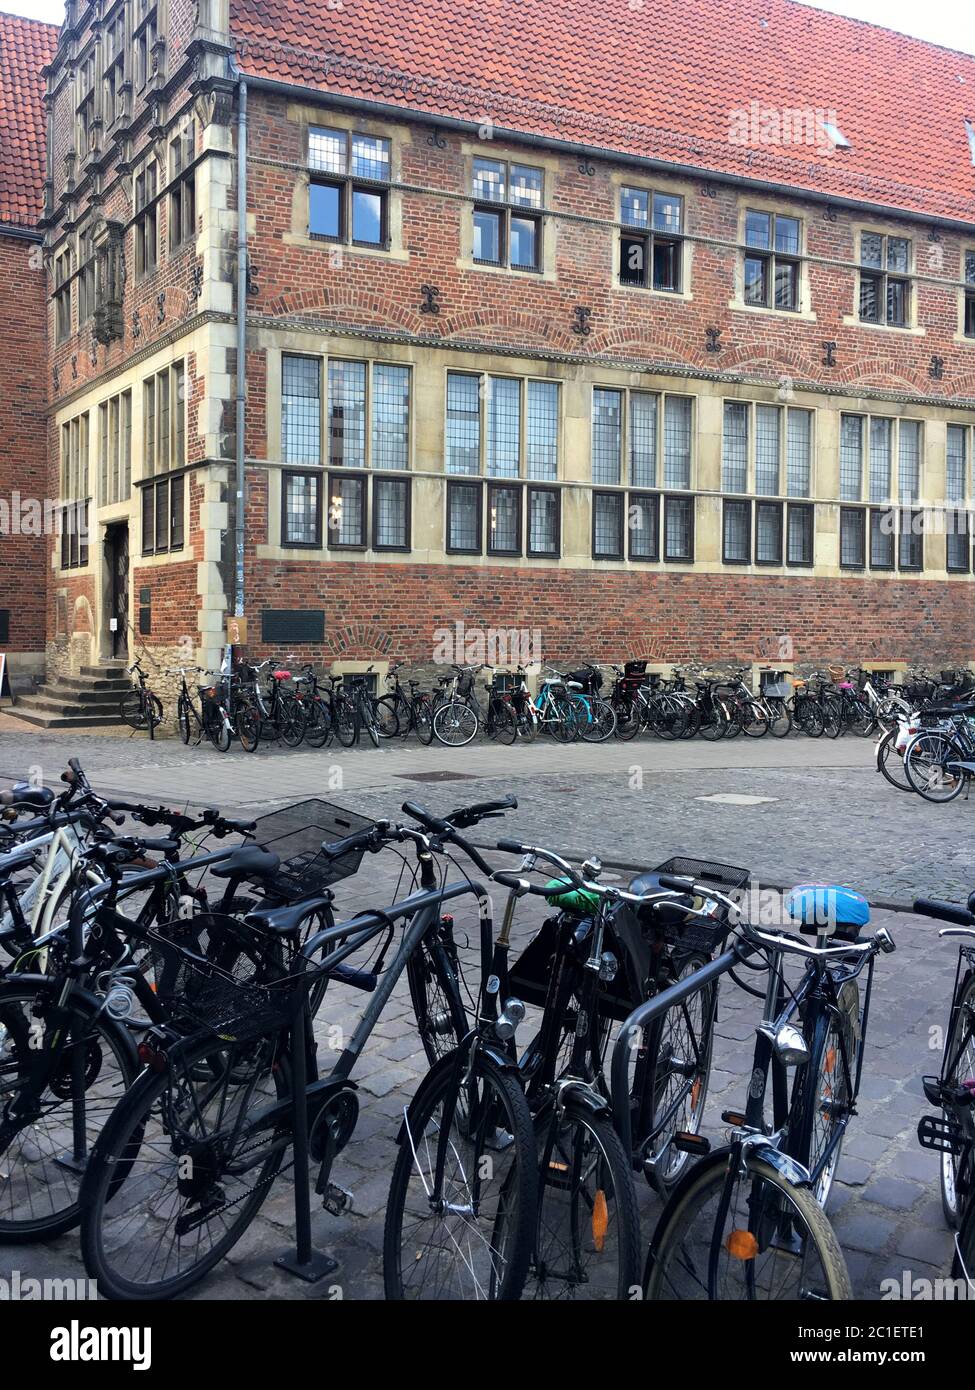 La antigua casa del clan y el edificio de la WWU Haus der Niederlande/ Krameramtshaus en Muenster, Alemania con muchas bicicletas estacionadas en frente. Foto de stock